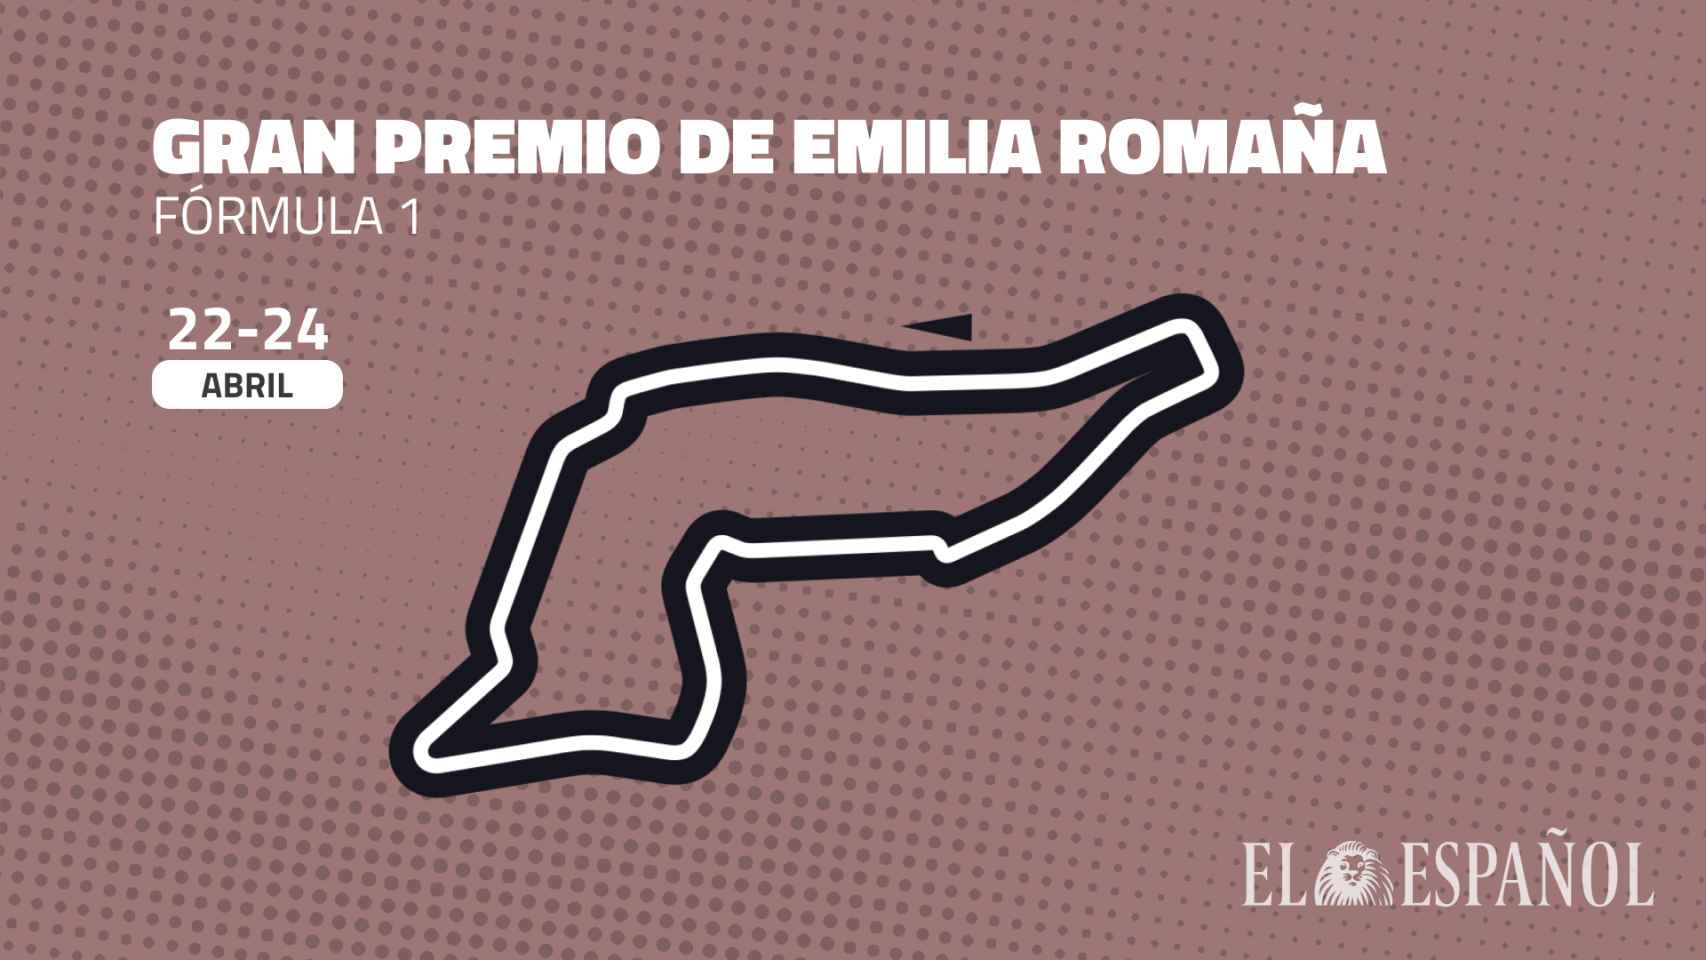 Gran Premio de Emilia Romaña de F1: fecha, hora y cómo verlo